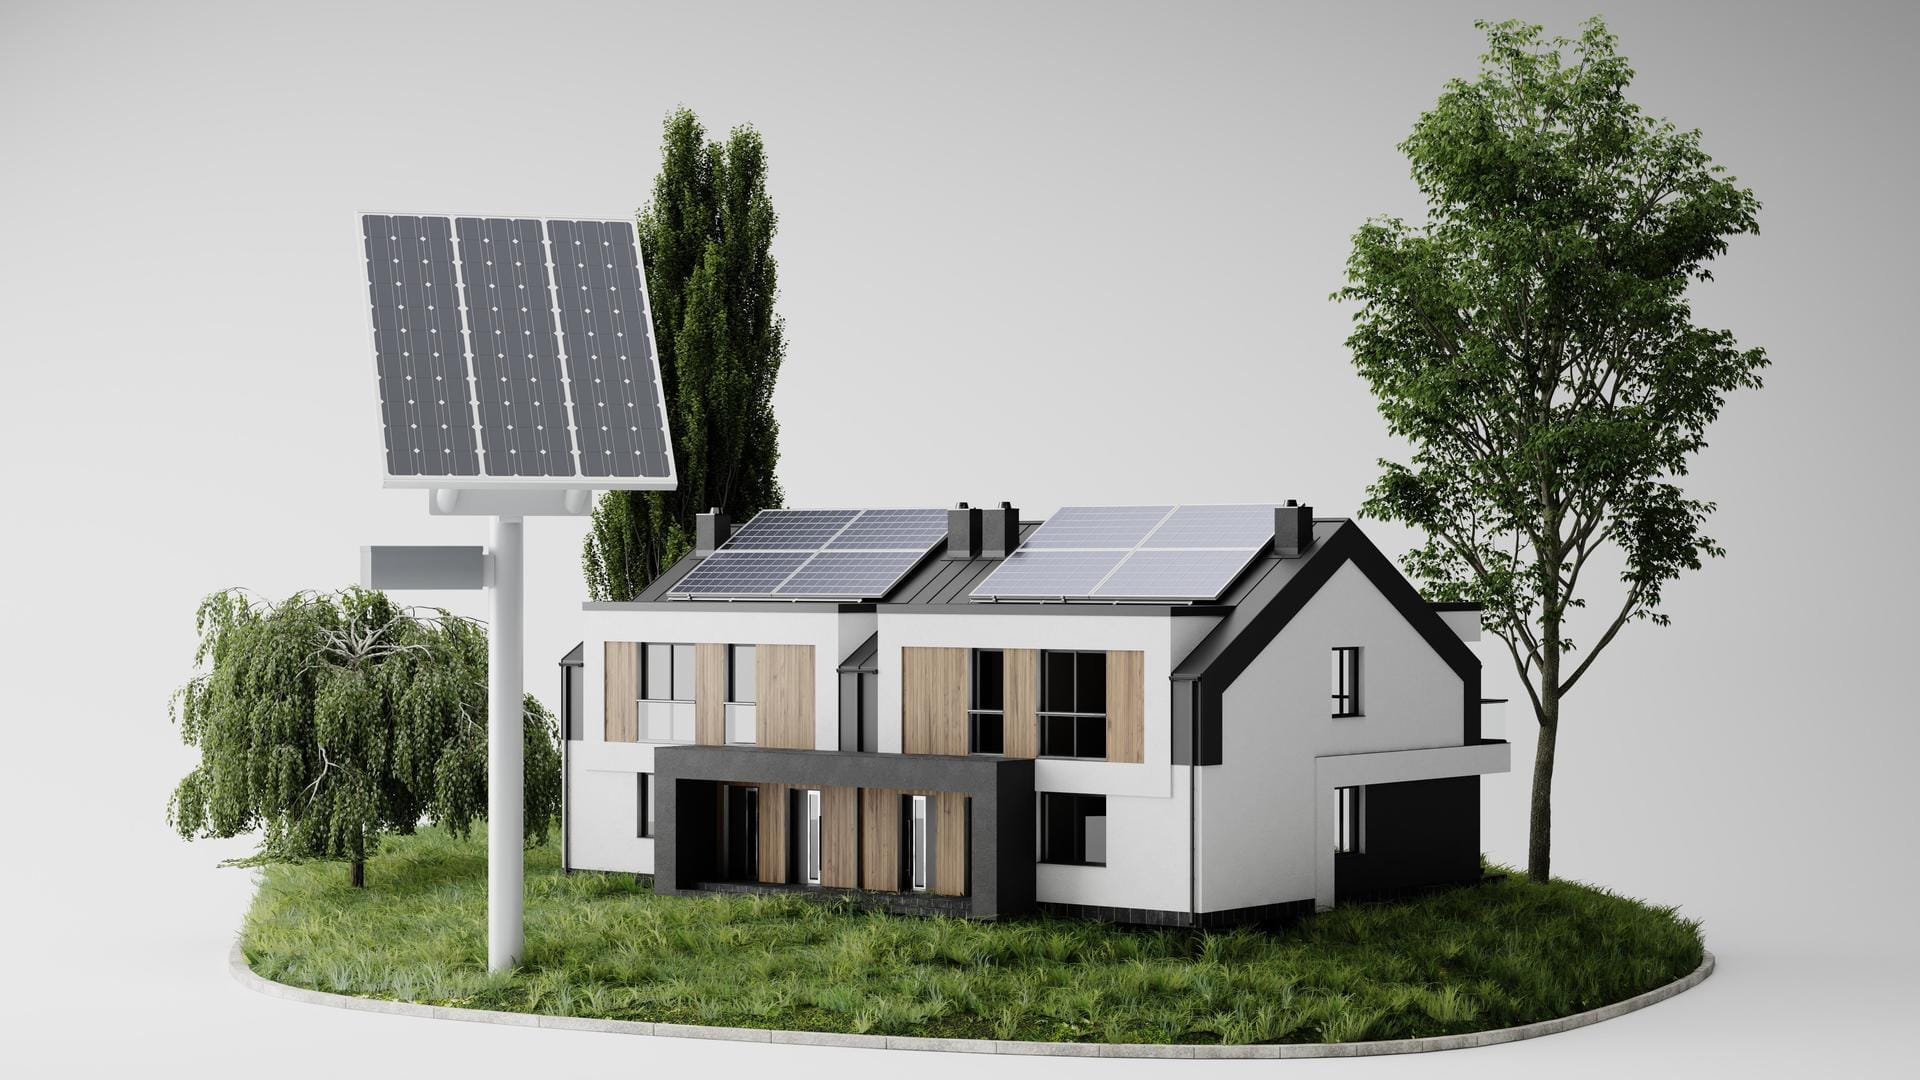 Strategies to achieve 'net-zero energy' home